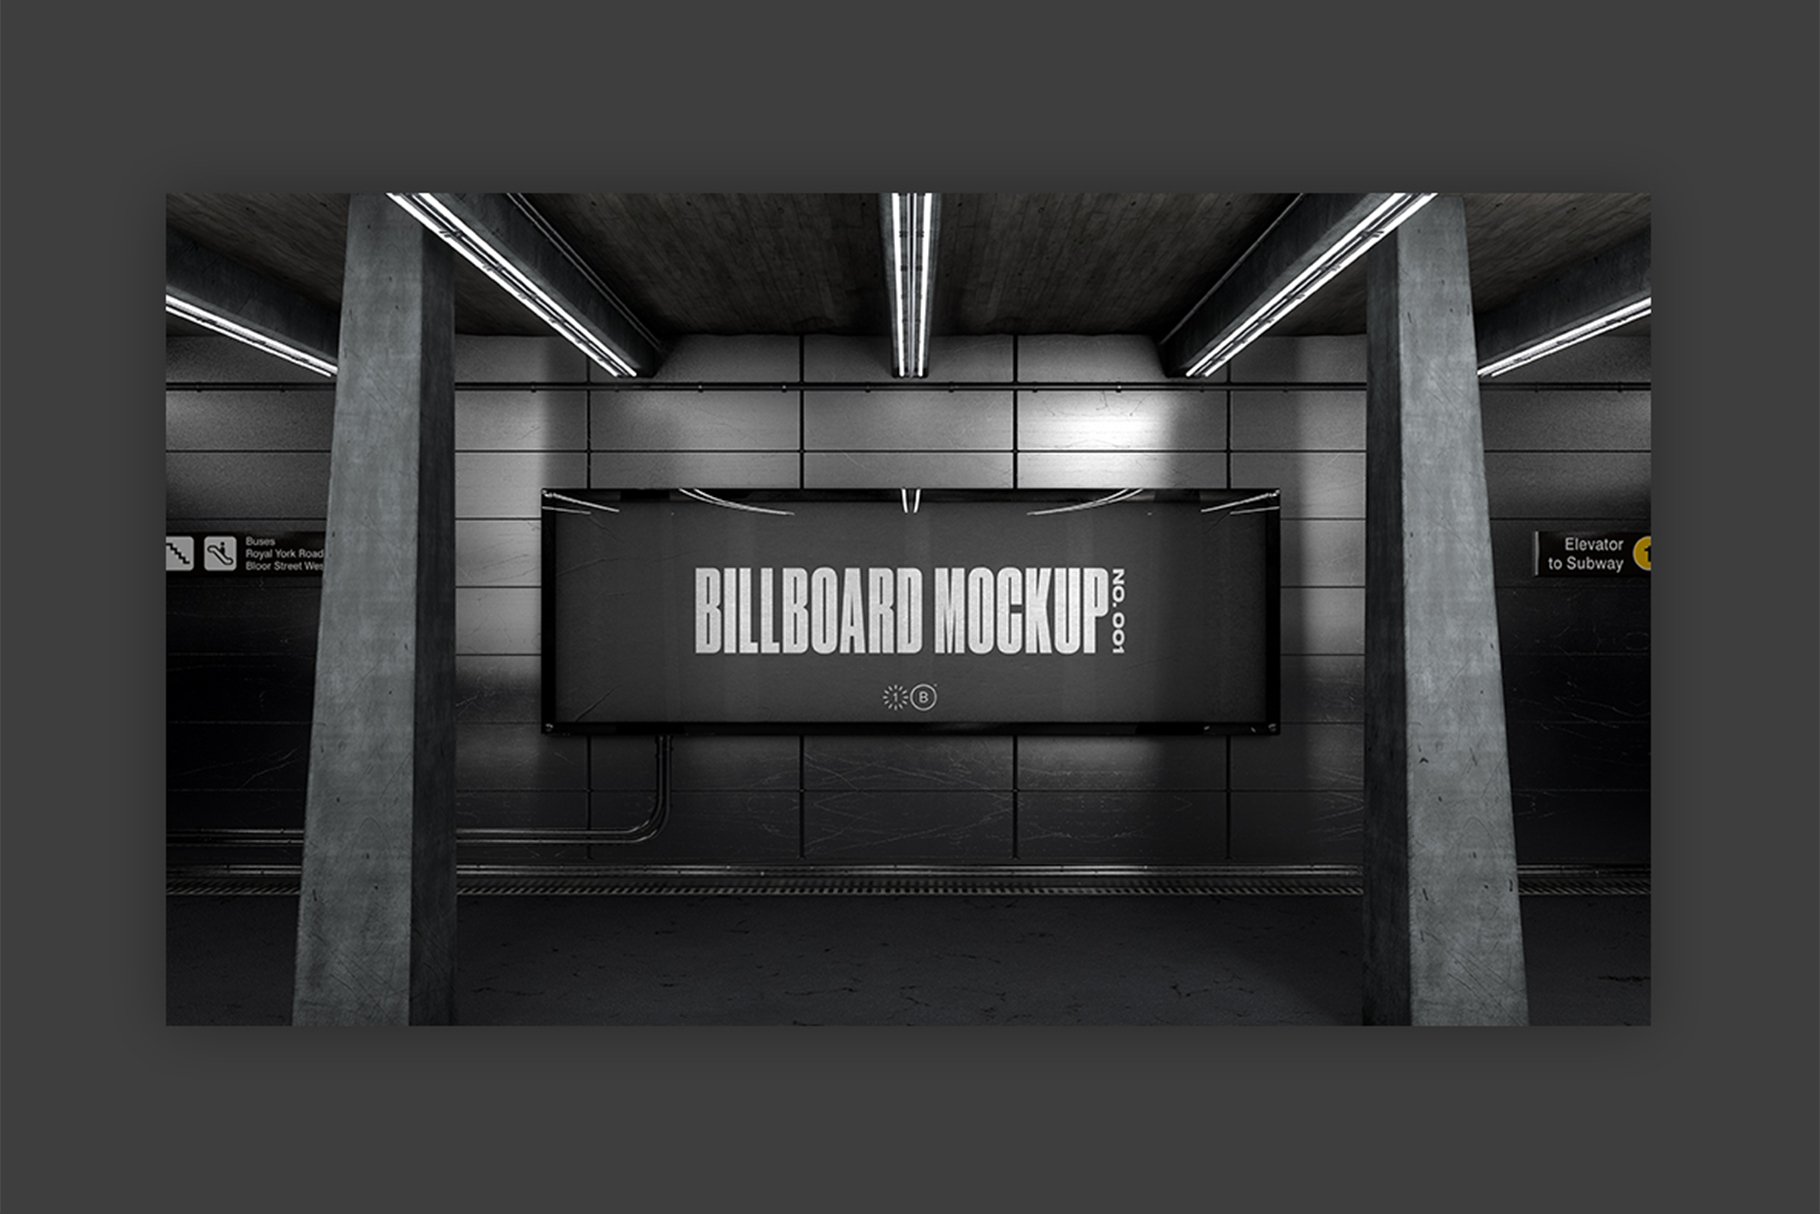 Subway Billboard Mockup - No. 001 preview image.